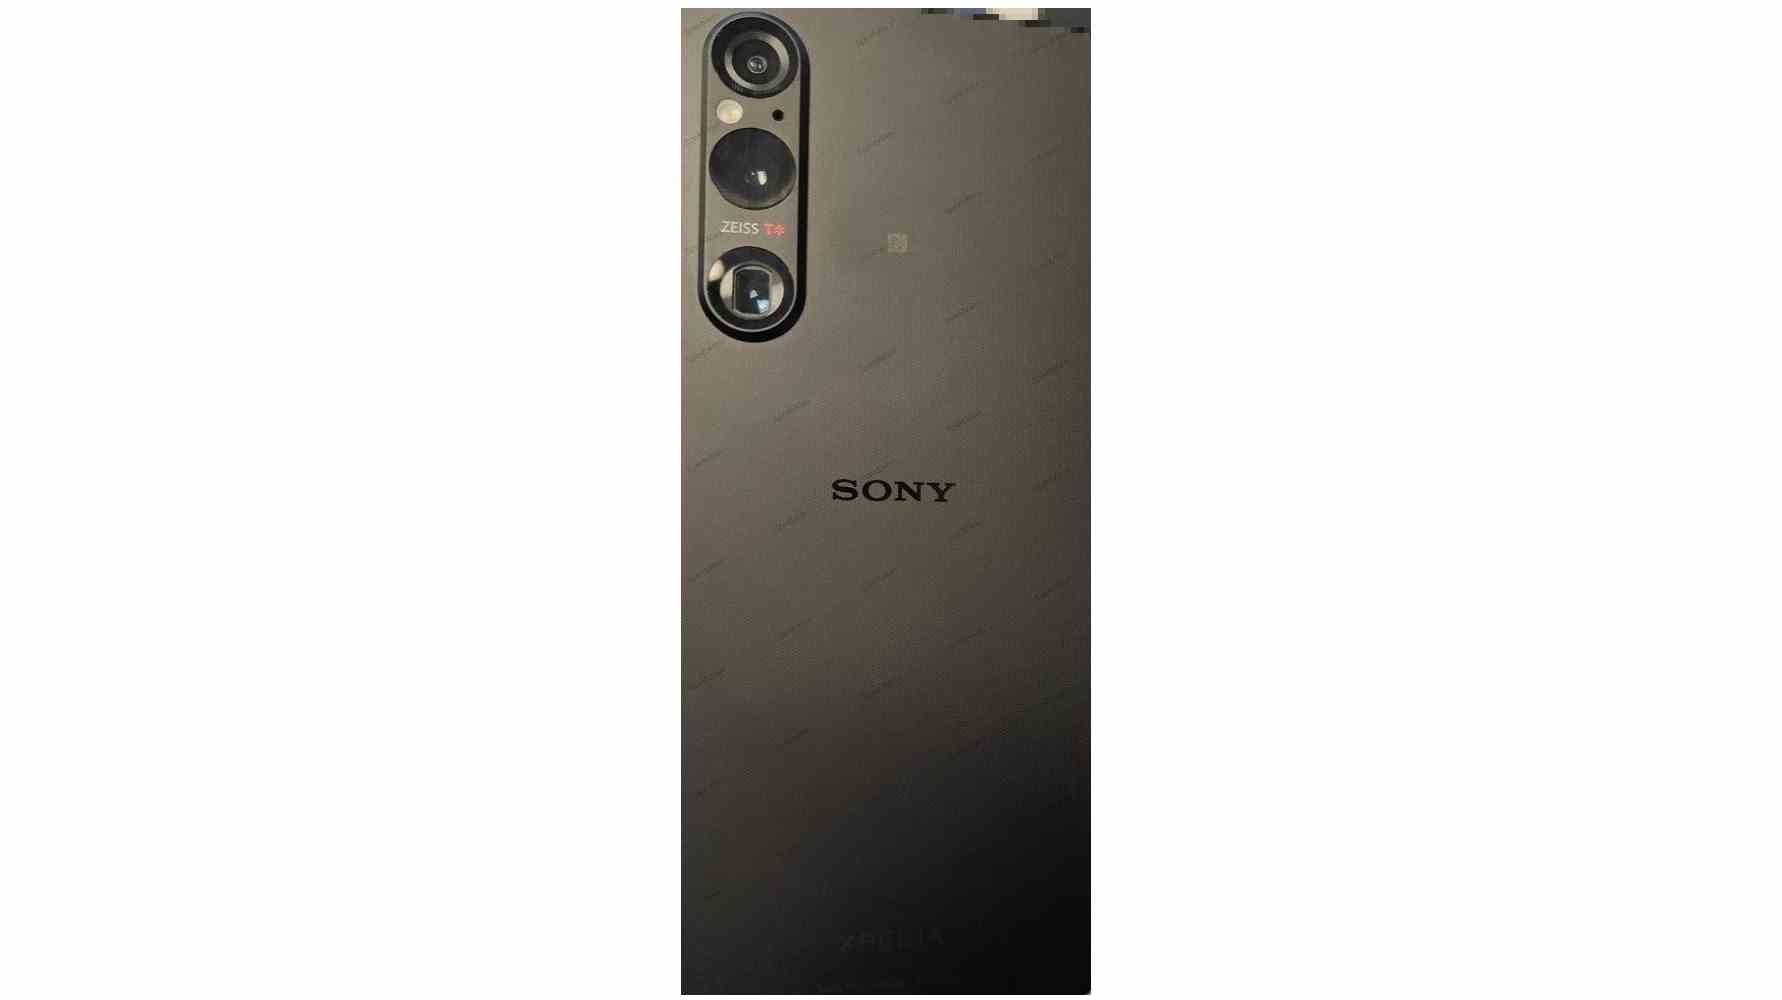 Une image divulguée montrant l'arrière du Sony Xperia 1 V